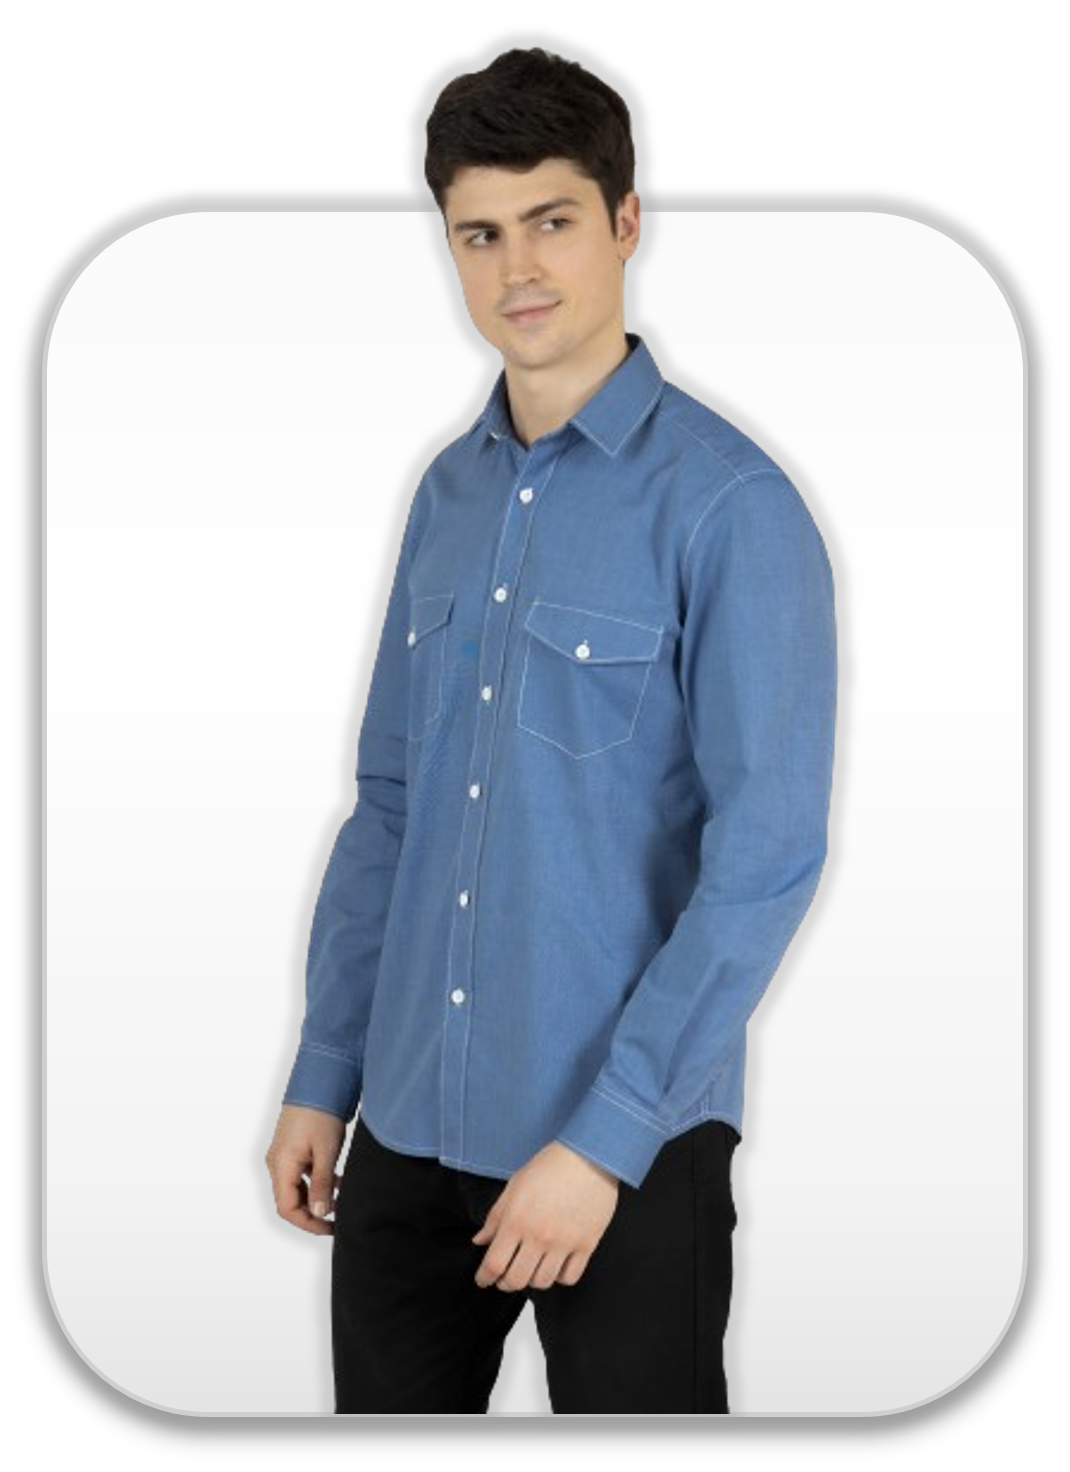 mens shirts, smart casual shirts, printed shirts, blue shirts men, blue shirt, formal shirts